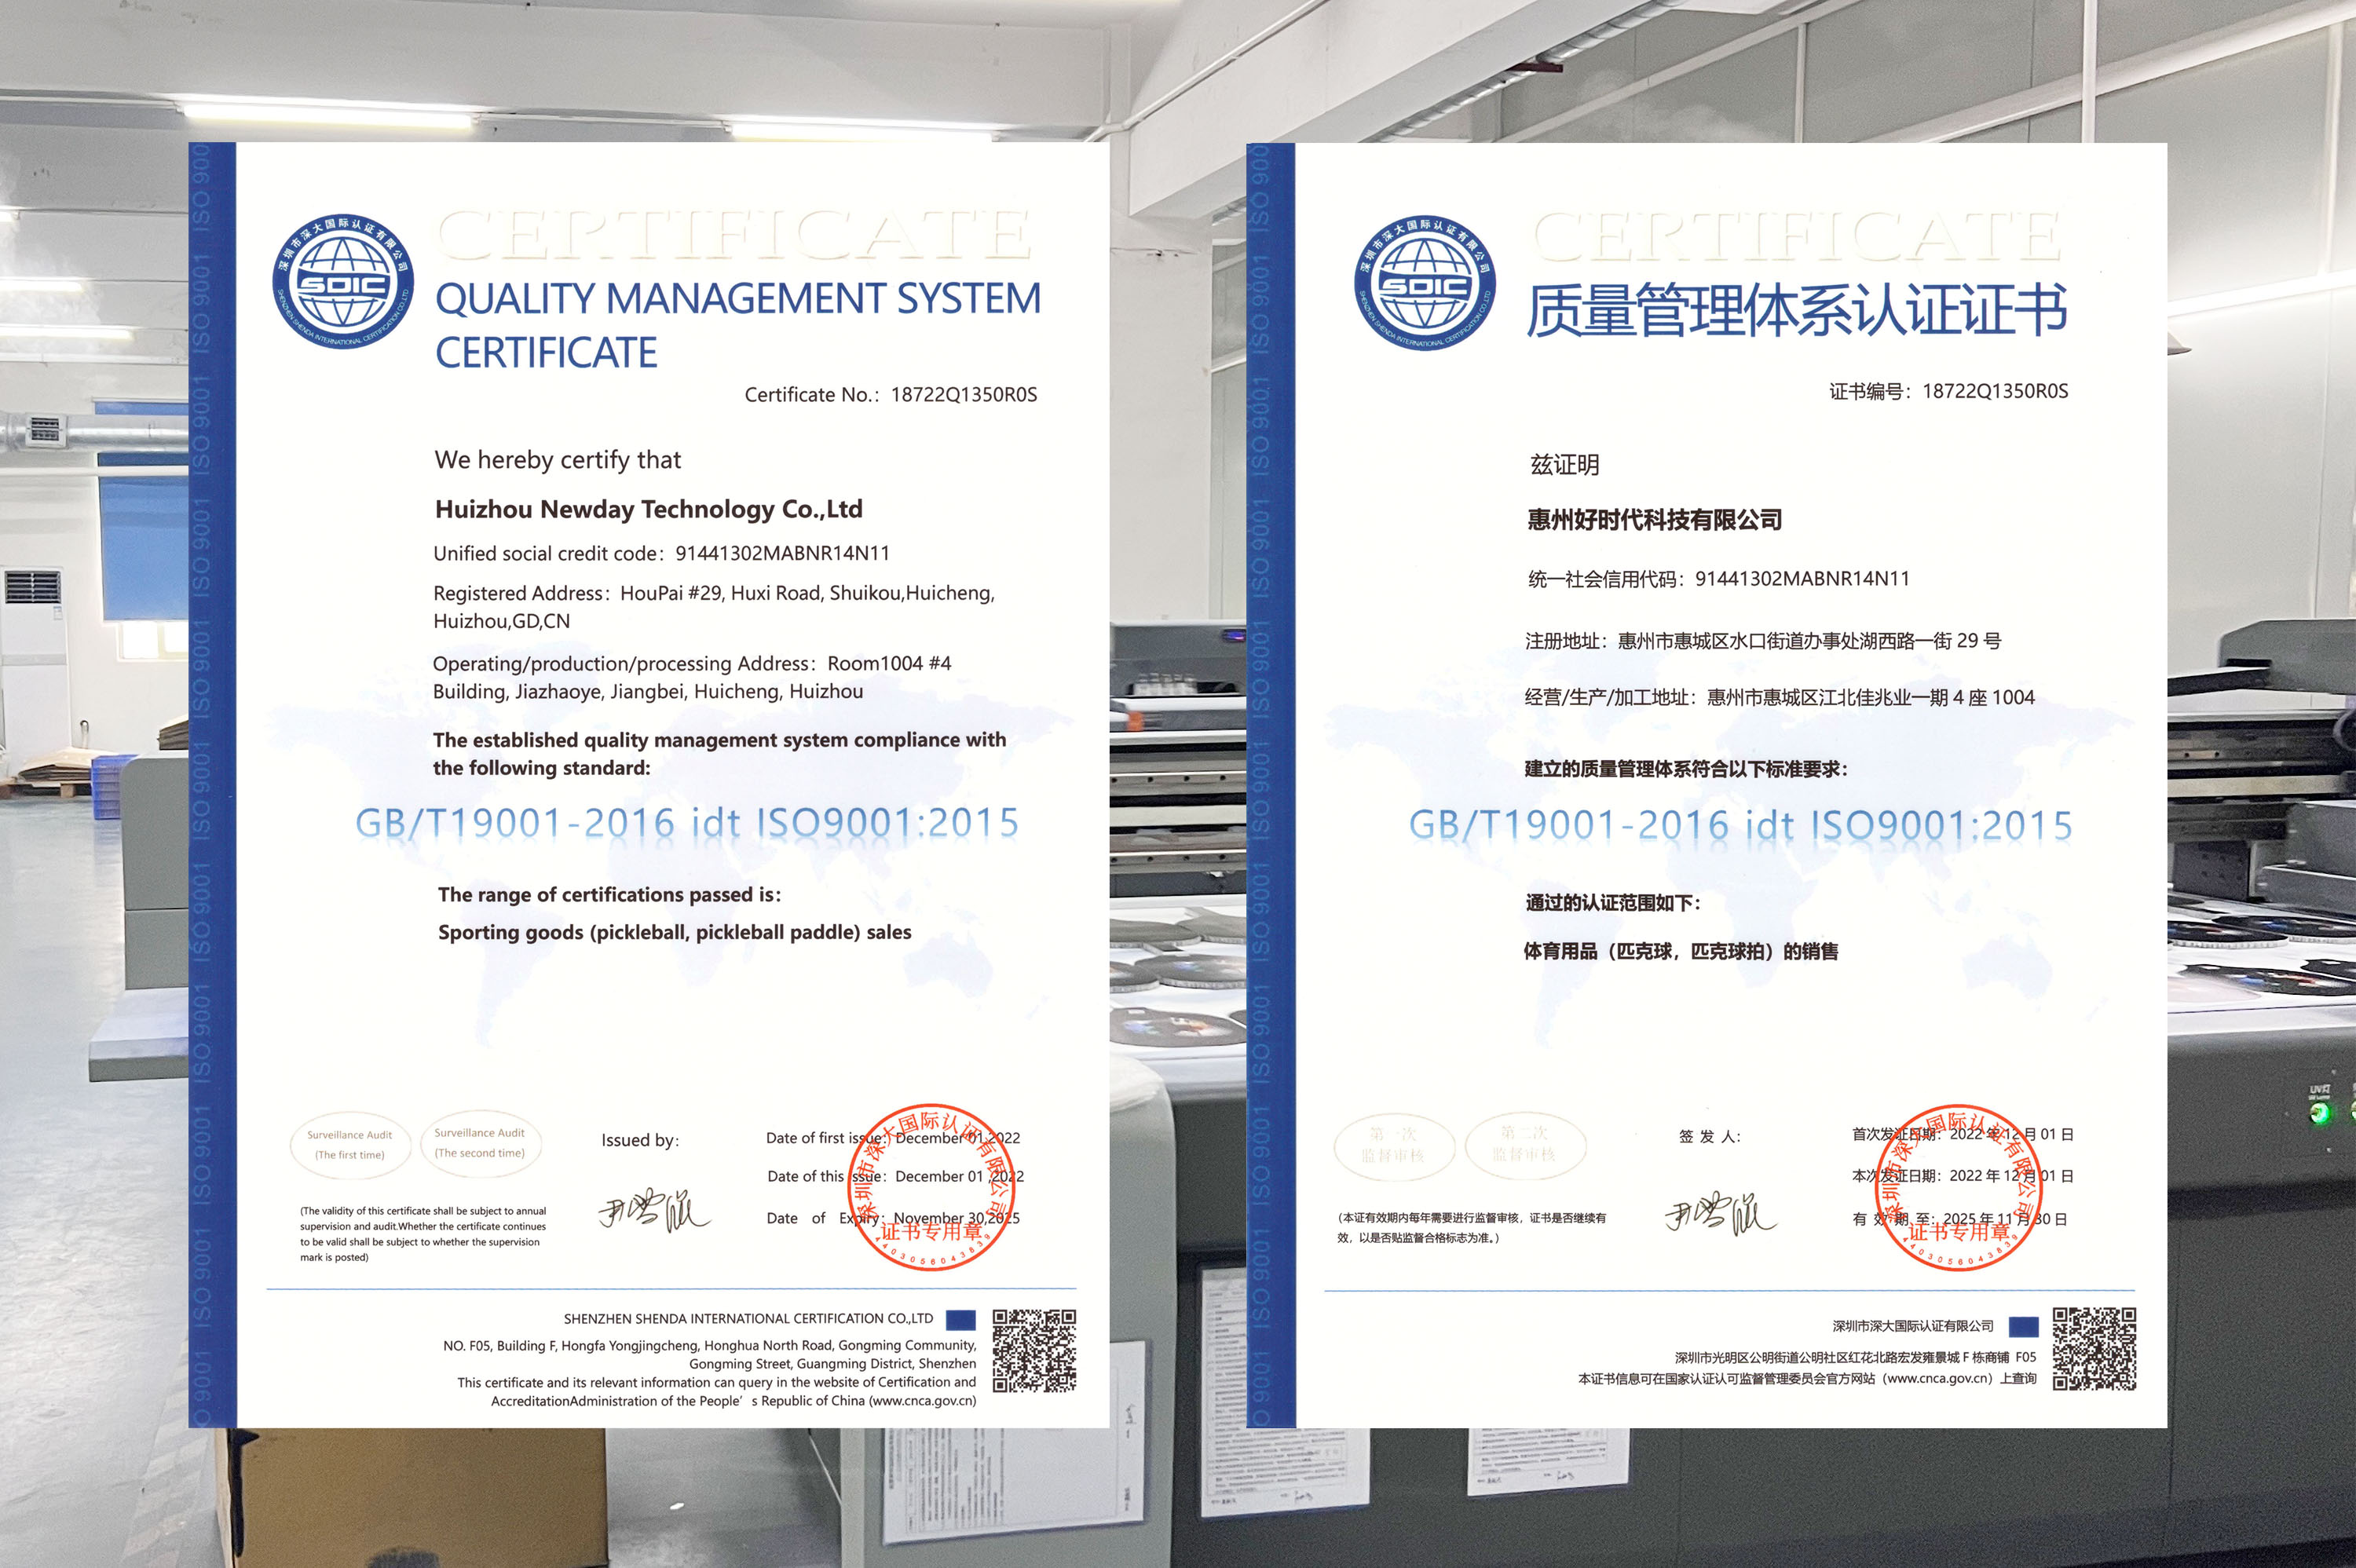 ISO9001 प्रमाणपत्र, आम्हाला ते मिळाले!